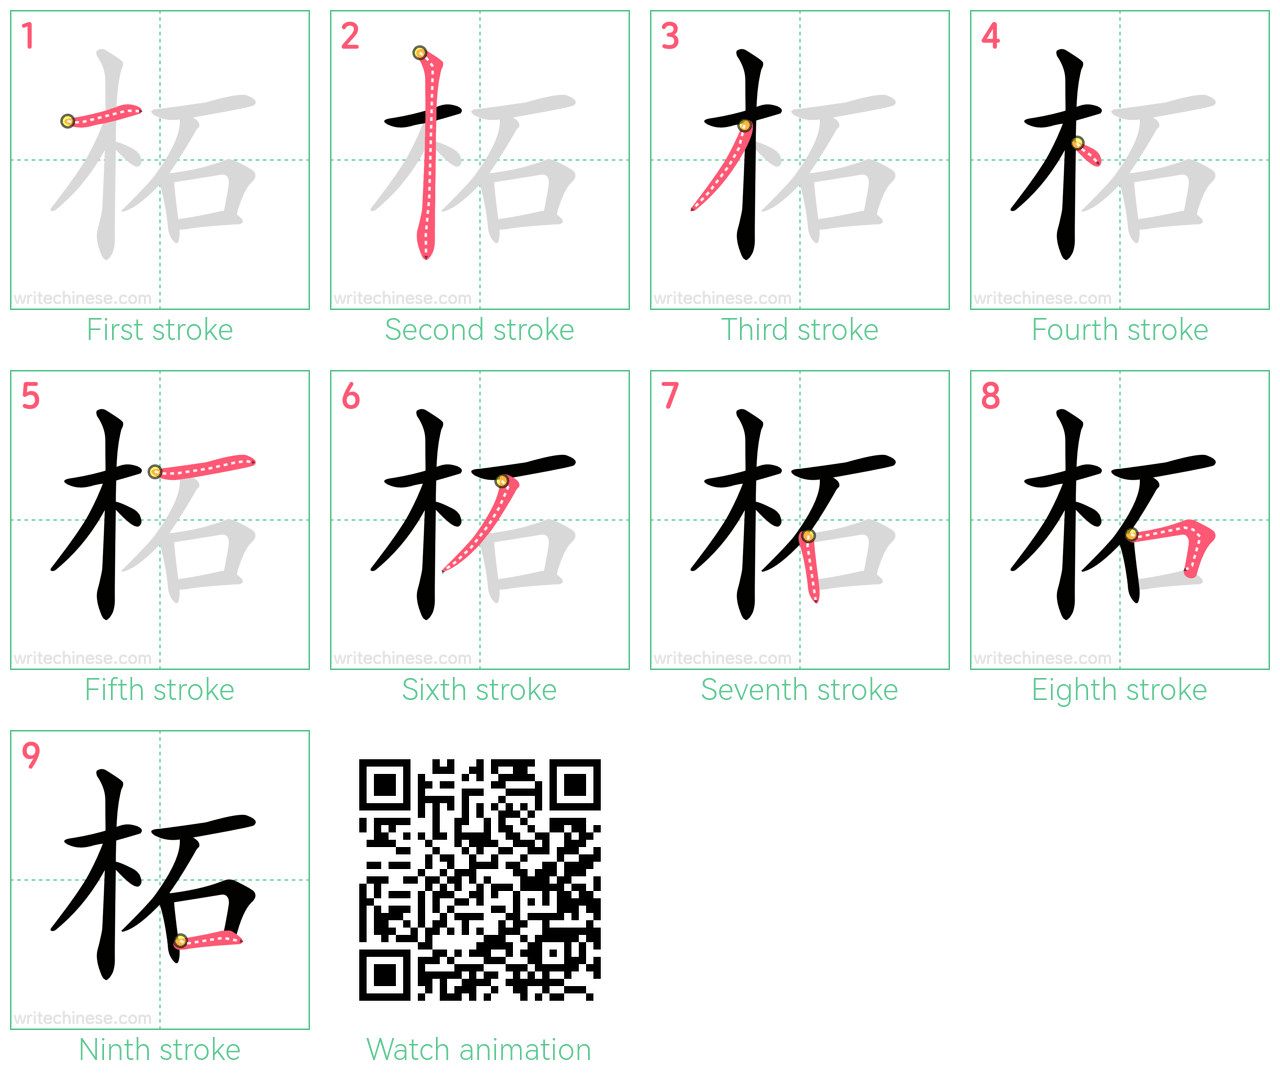 柘 step-by-step stroke order diagrams